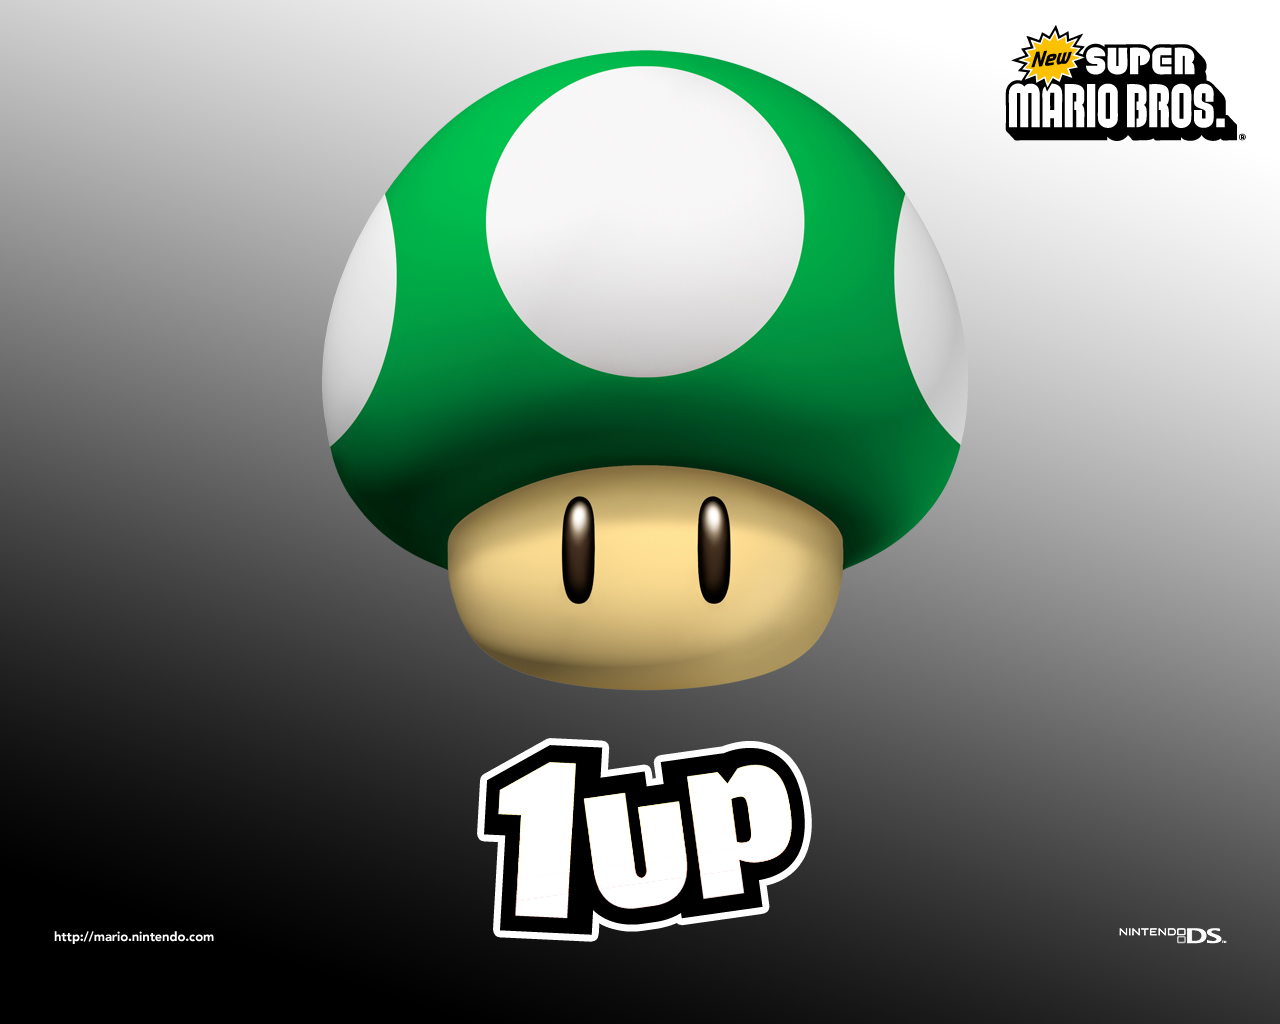 New Super Mario Bros Wallpaper 1up Mushroom Jpg